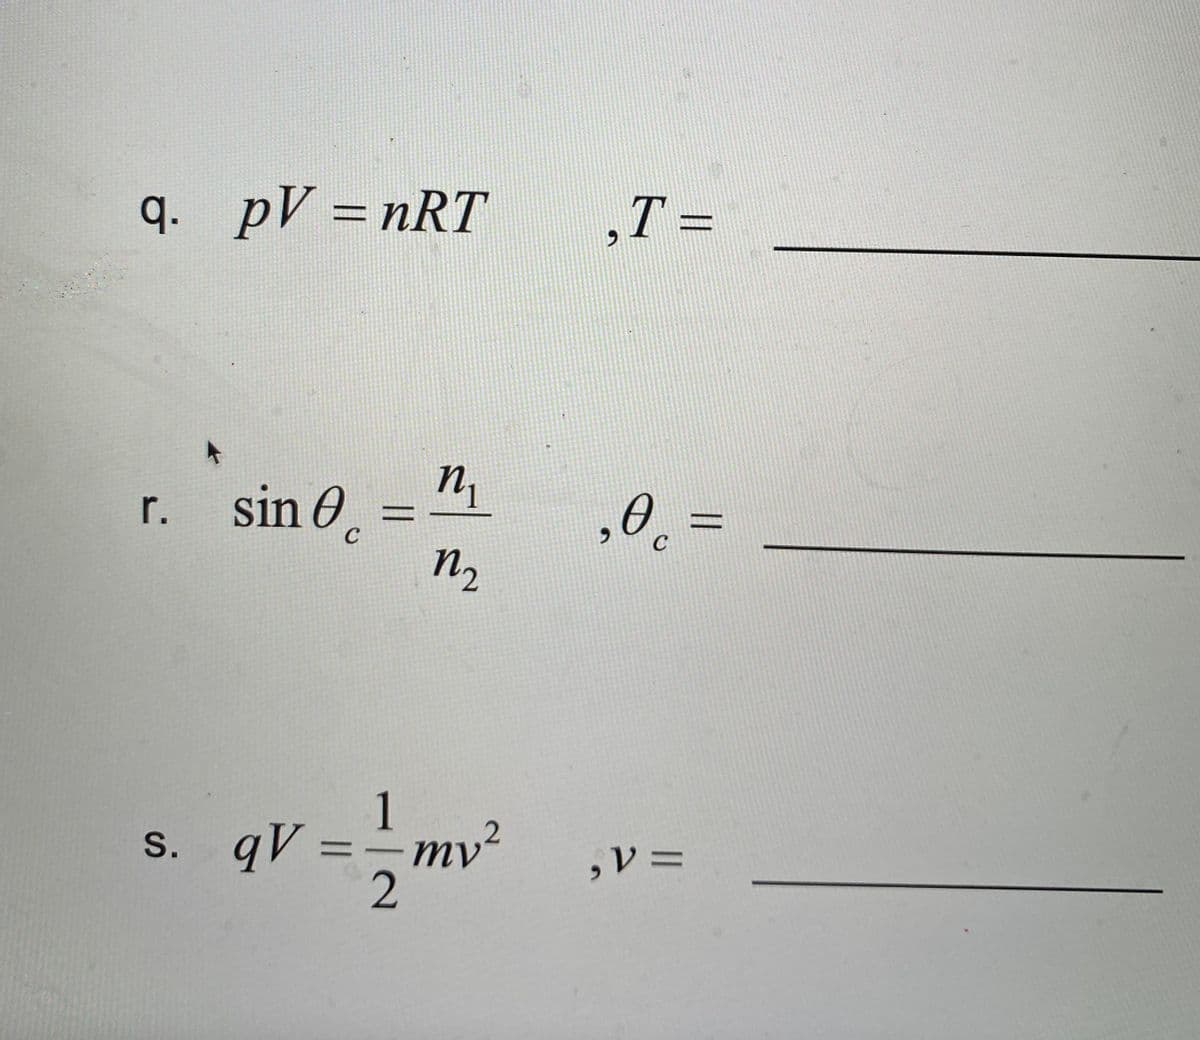 D
q. pV = nRT
n₁
r.
sin e
n₂
1
s. qV:
=
mv ²
2
C
-
‚T =
,0 =
C
, V =